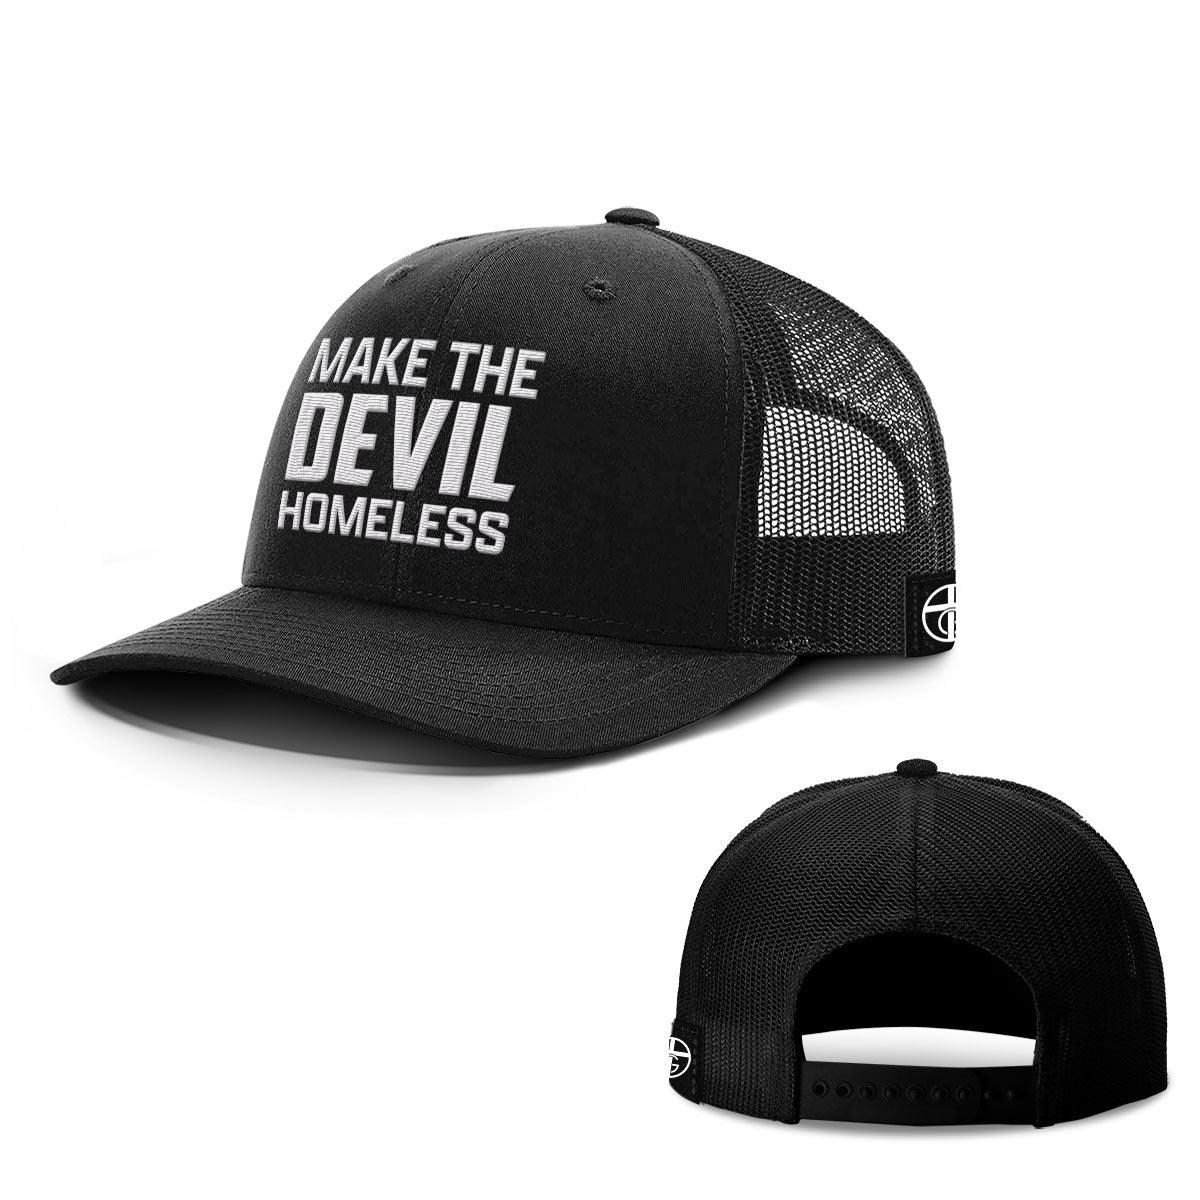 Make The Devil Homeless Hats